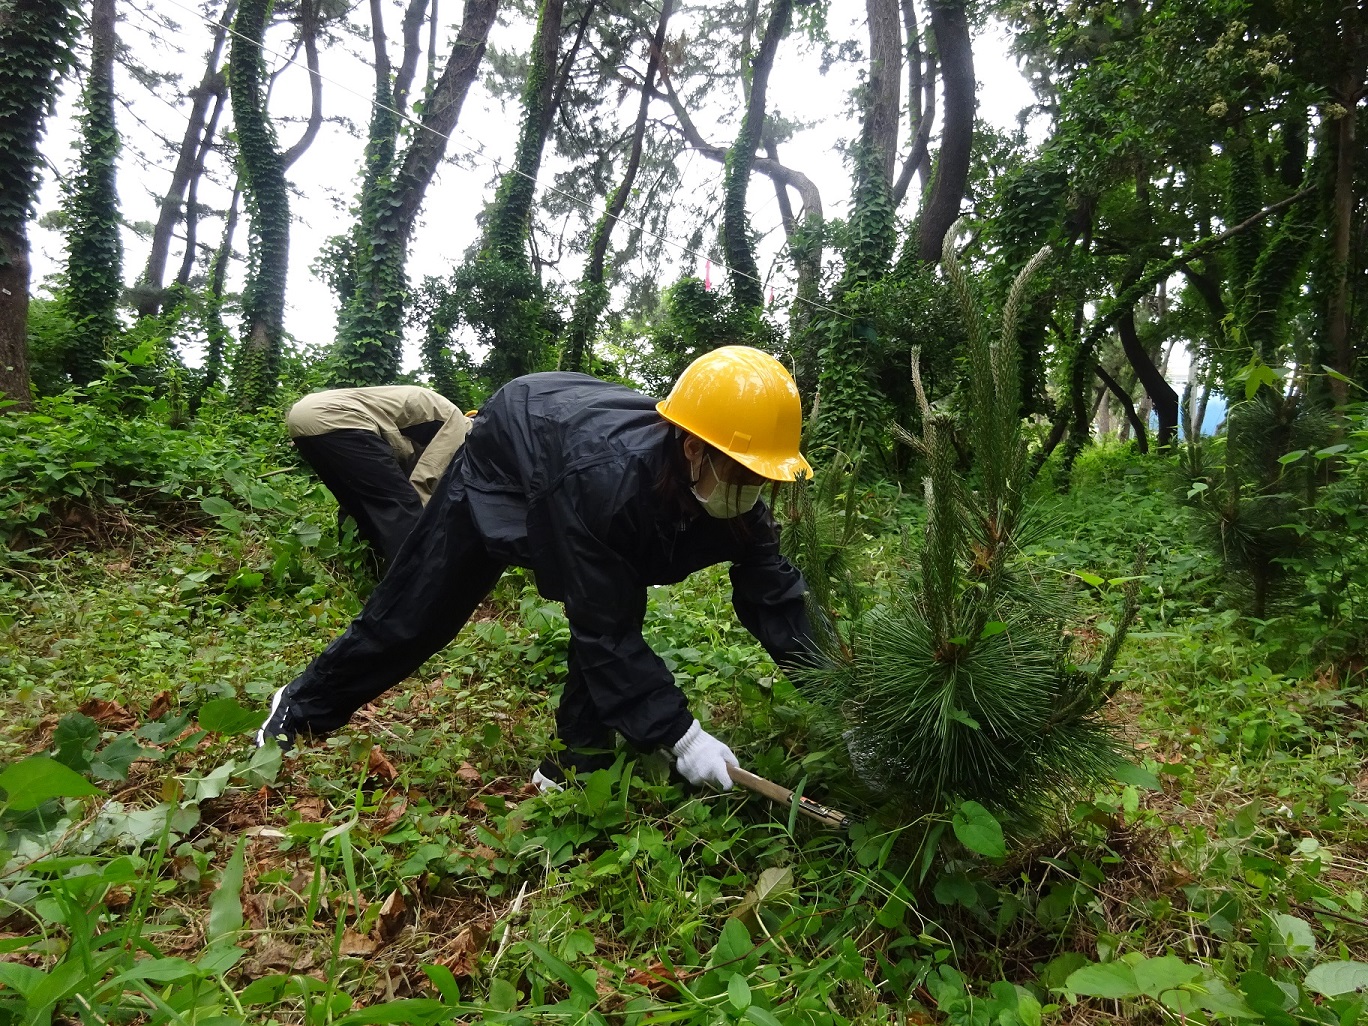 ◆湘南で砂防林づくり 湘南海岸林ボランティア◆神奈川県湘南海